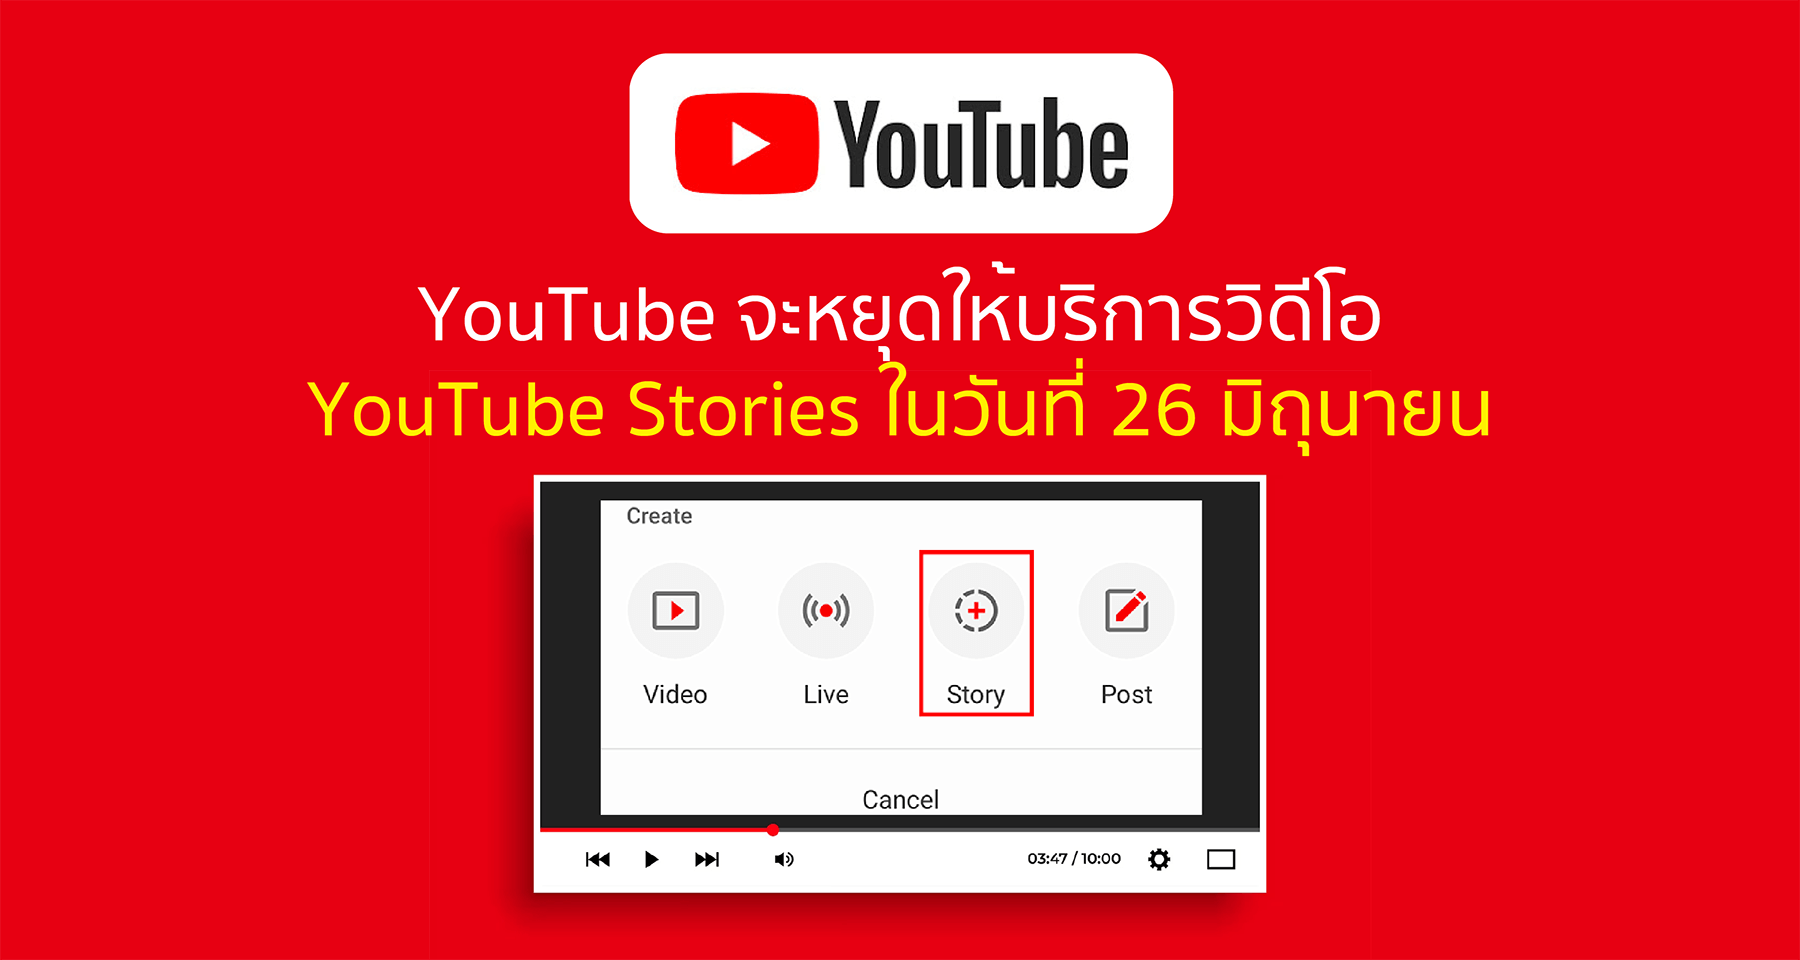 YouTube จะหยุดให้บริการวิดีโอ YouTube Stories ในวันที่ 26 มิถุนายน